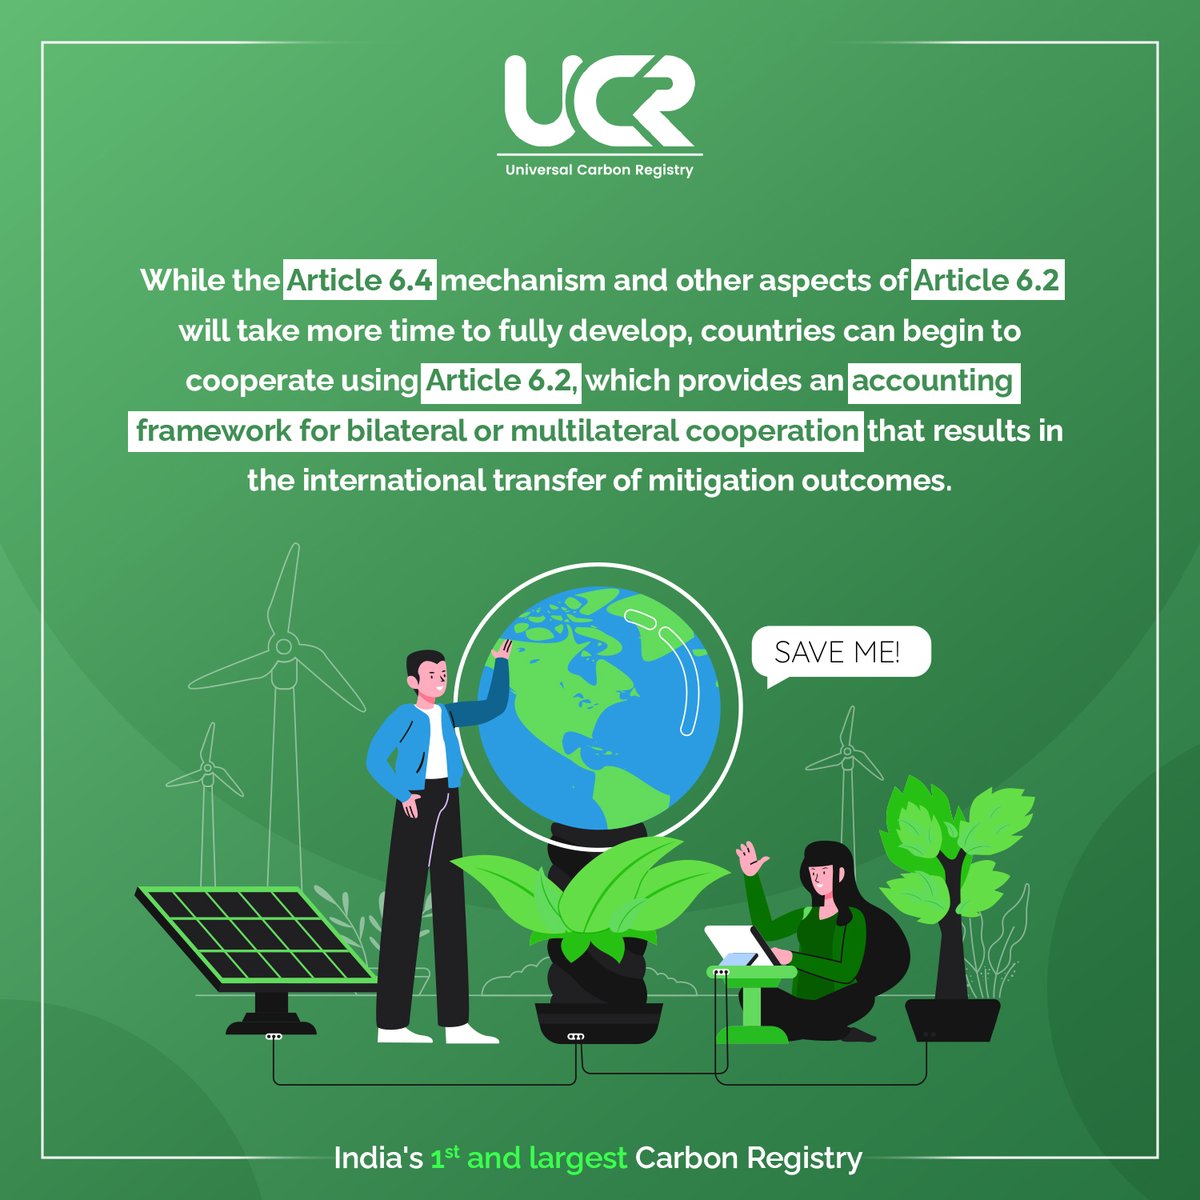 #CarbonNeutral #ClimateAction #universalcarbonregistry #carbonemission #carboncredits #carbonsolutions